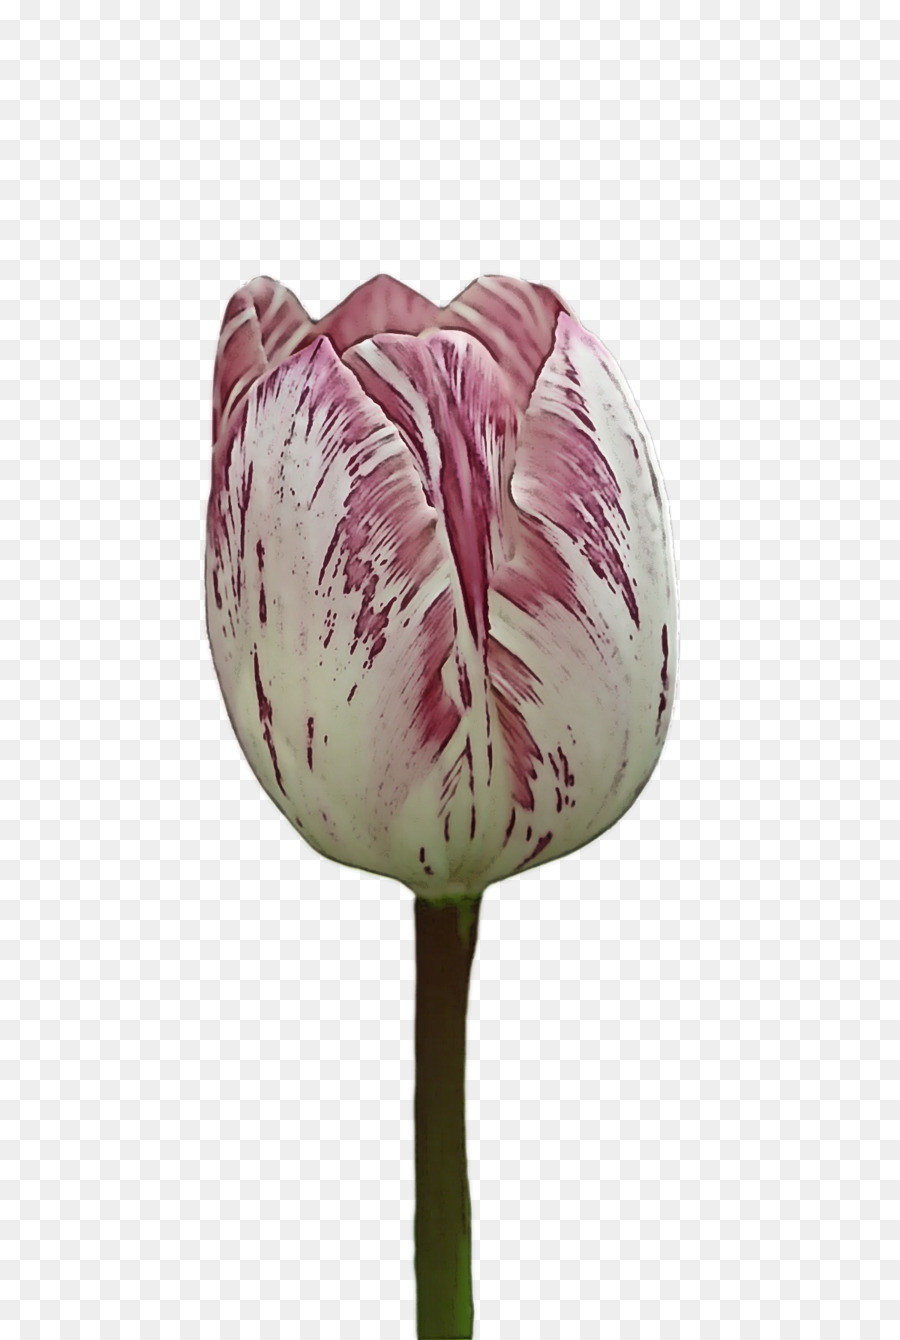 plant stem tulip lilies petal flower